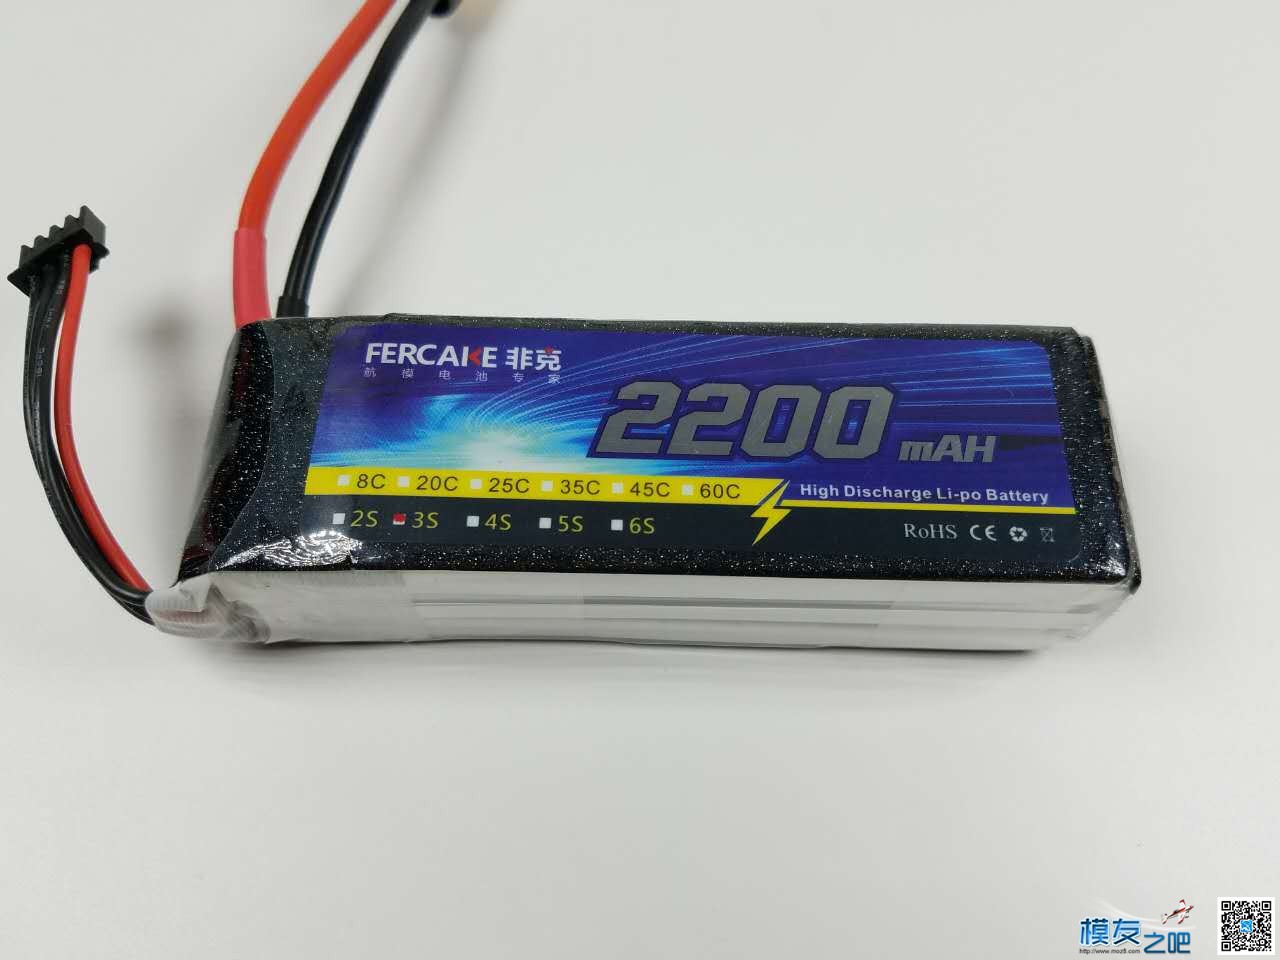 非克电池测试体验活动 电池,非克汽车02,taobao 作者:飞天狼 6801 